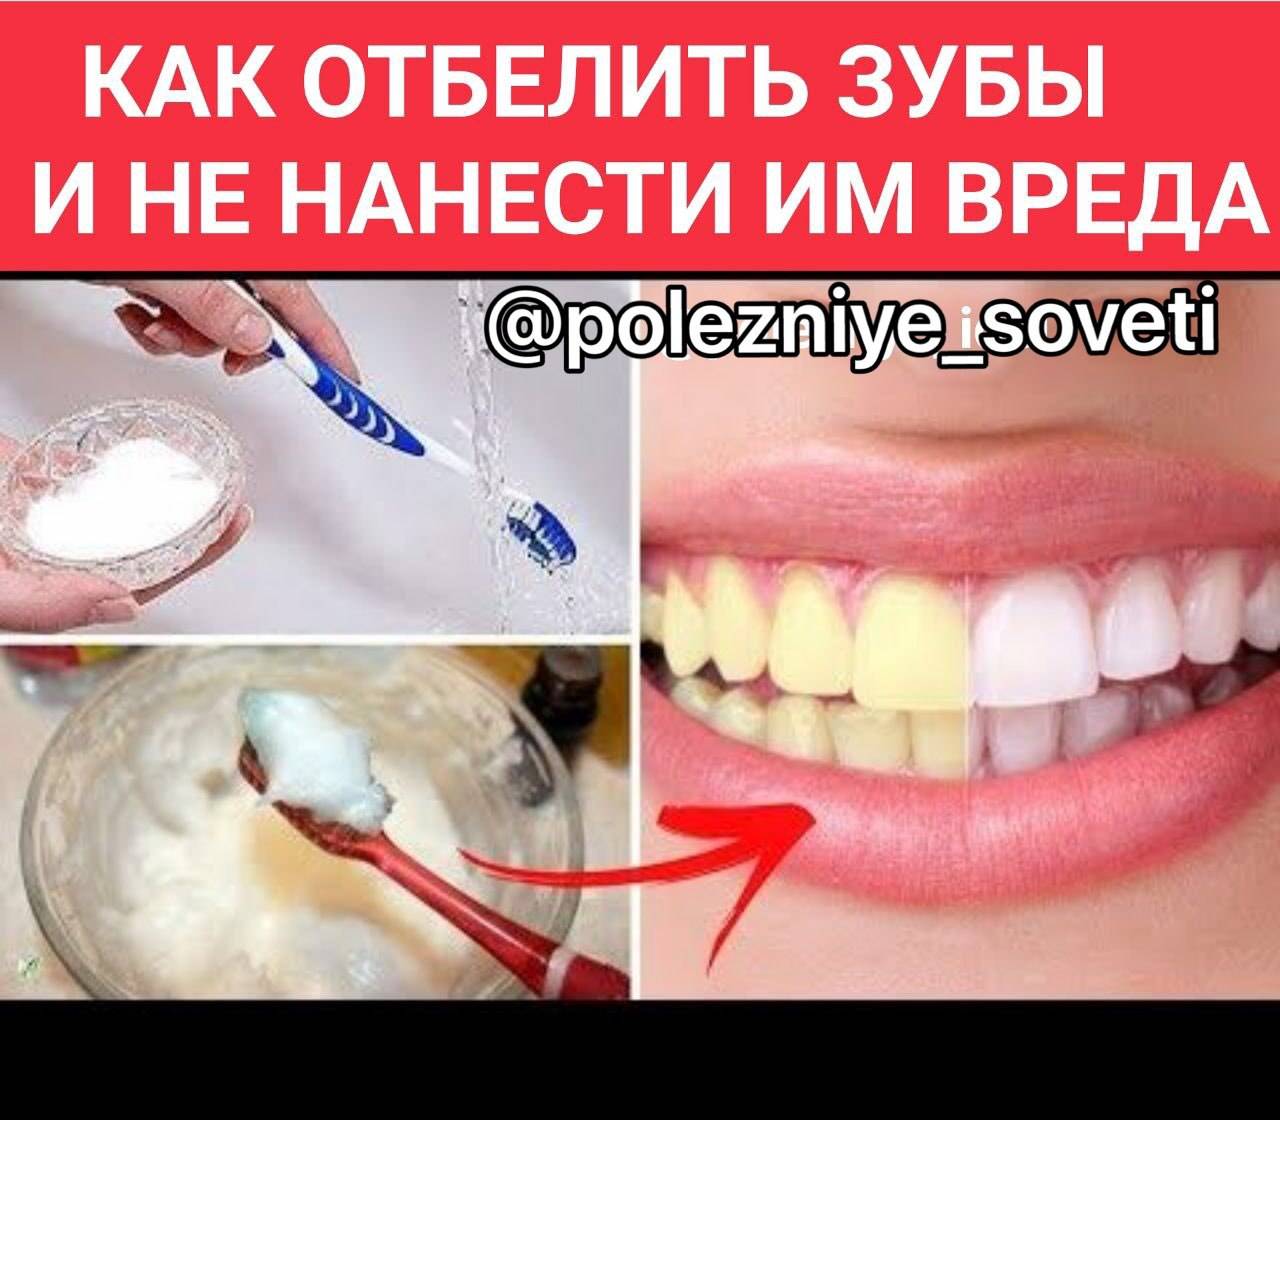 Эффективное отбеливание в домашних условиях. Как отбелить зубы в домашних условиях. Отбелить зубы без вреда. Отбелить зубы в домашних условиях без вреда для эмали быстро. Самостоятельное отбеливание зубов.